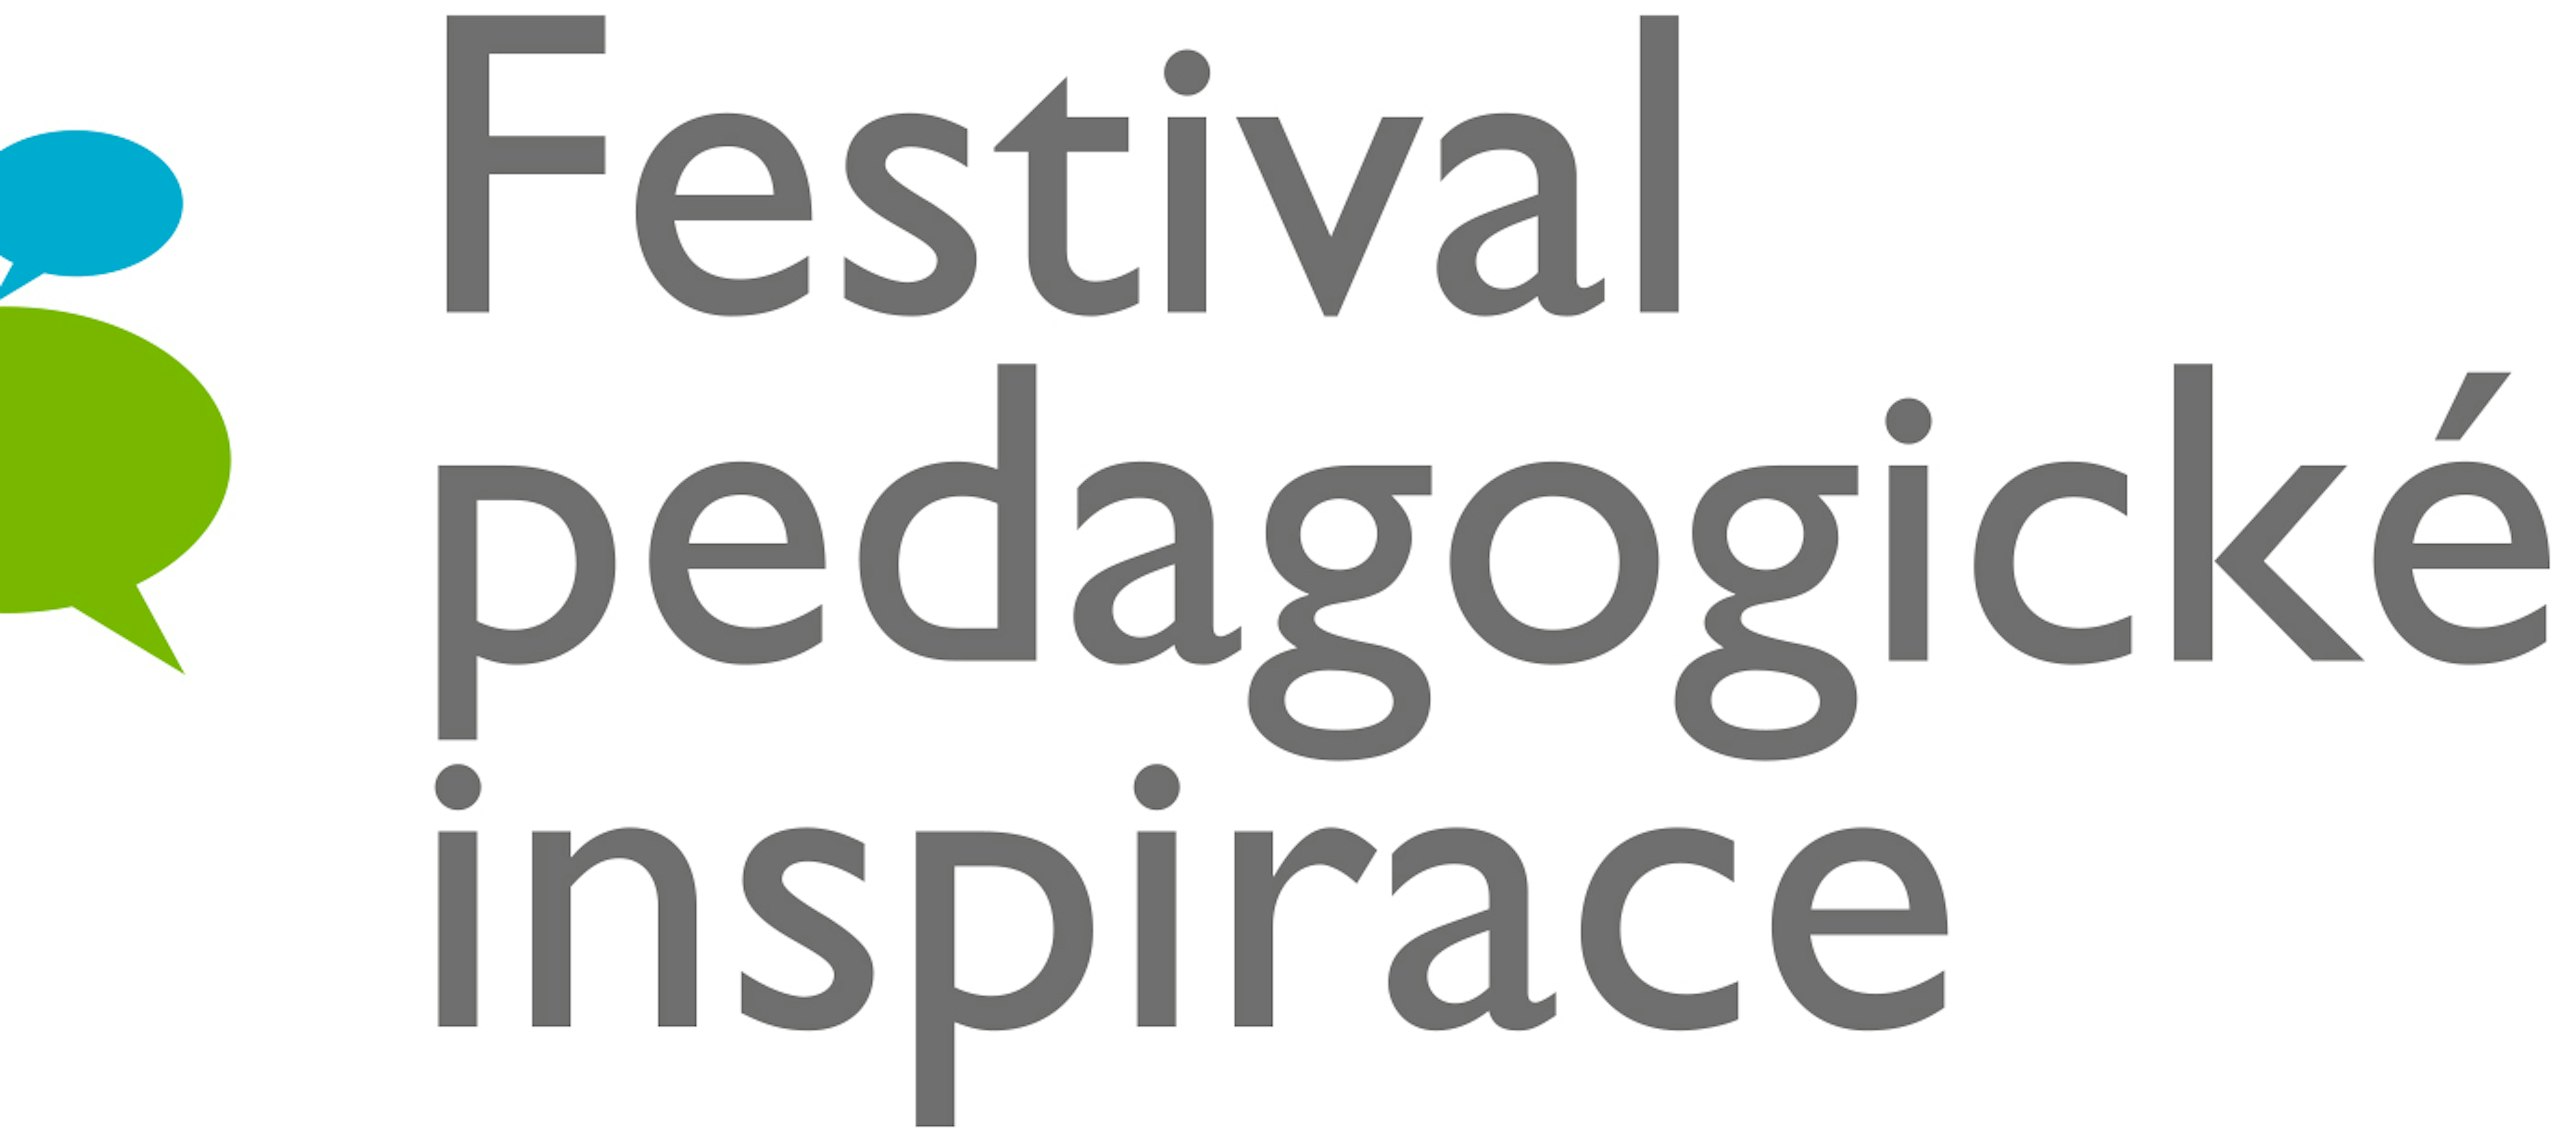 Připravujeme Festival pedagogické inspirace 2019